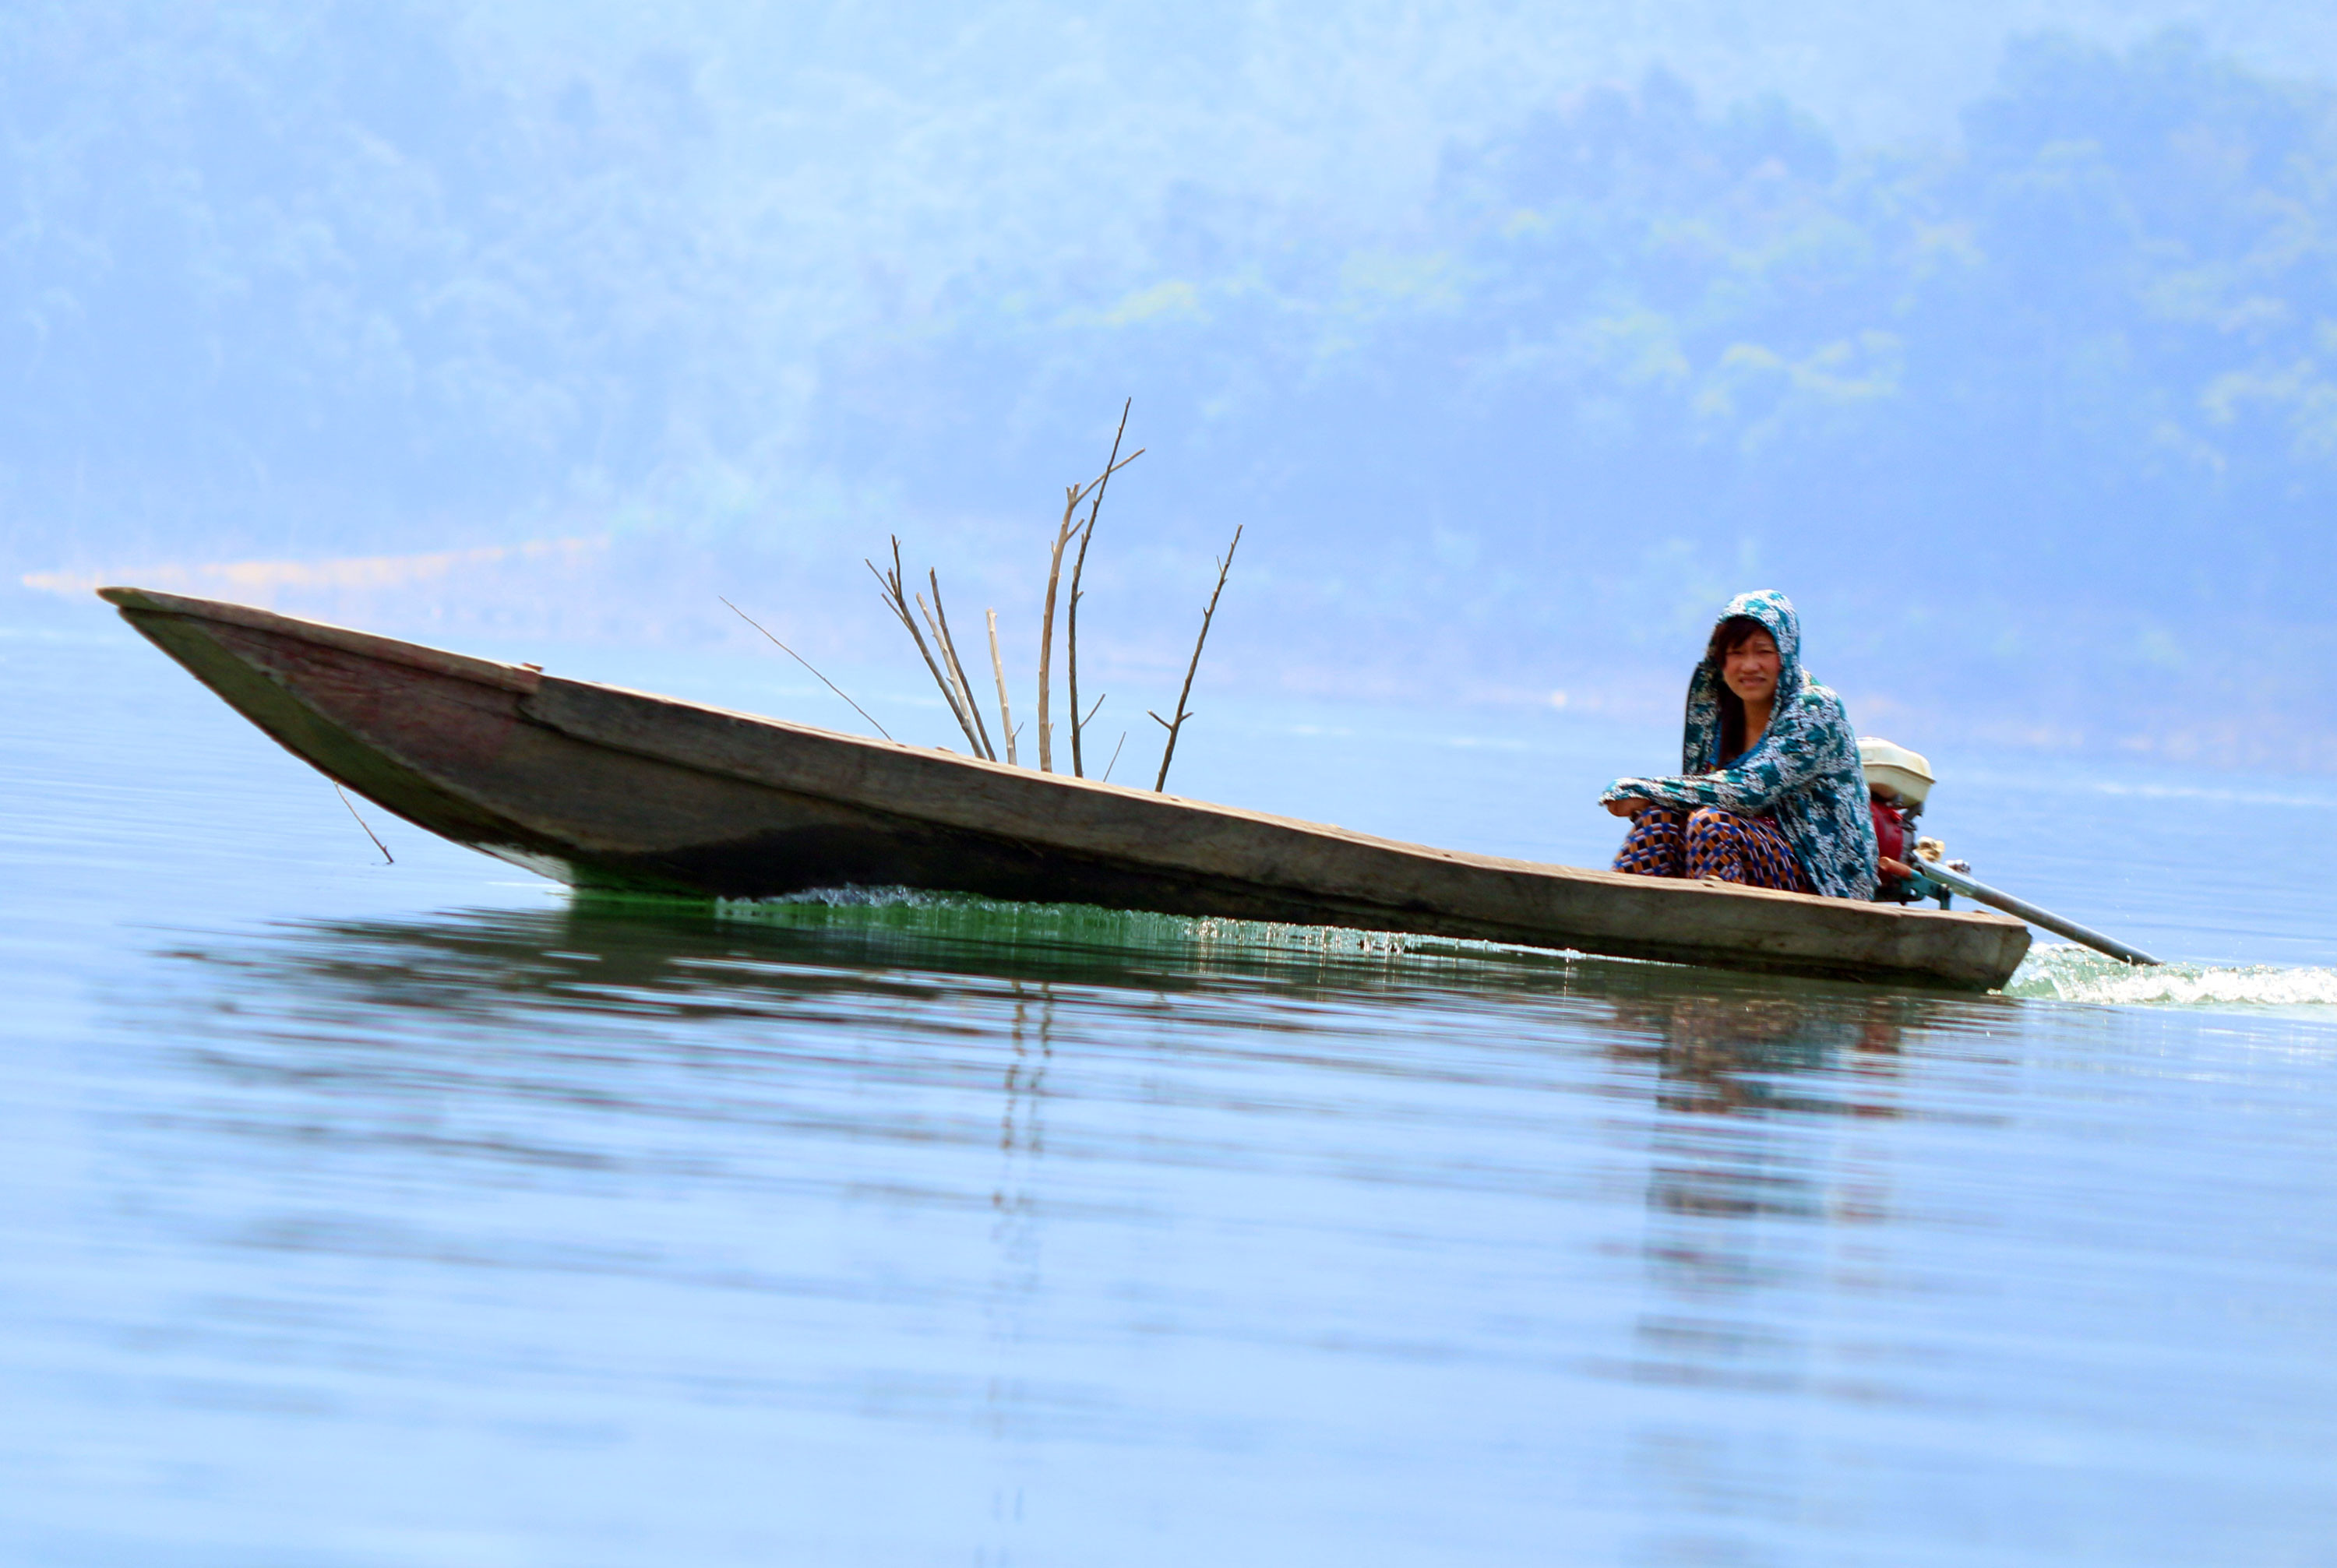 Trên lòng hồ thủy điện bản Vẽ không khó khăn để bắt gặp hình ảnh những người phụ nữ lái thuyền ba lá đi kéo lưới, thả câu đánh cá. Ảnh: Đào Thọ